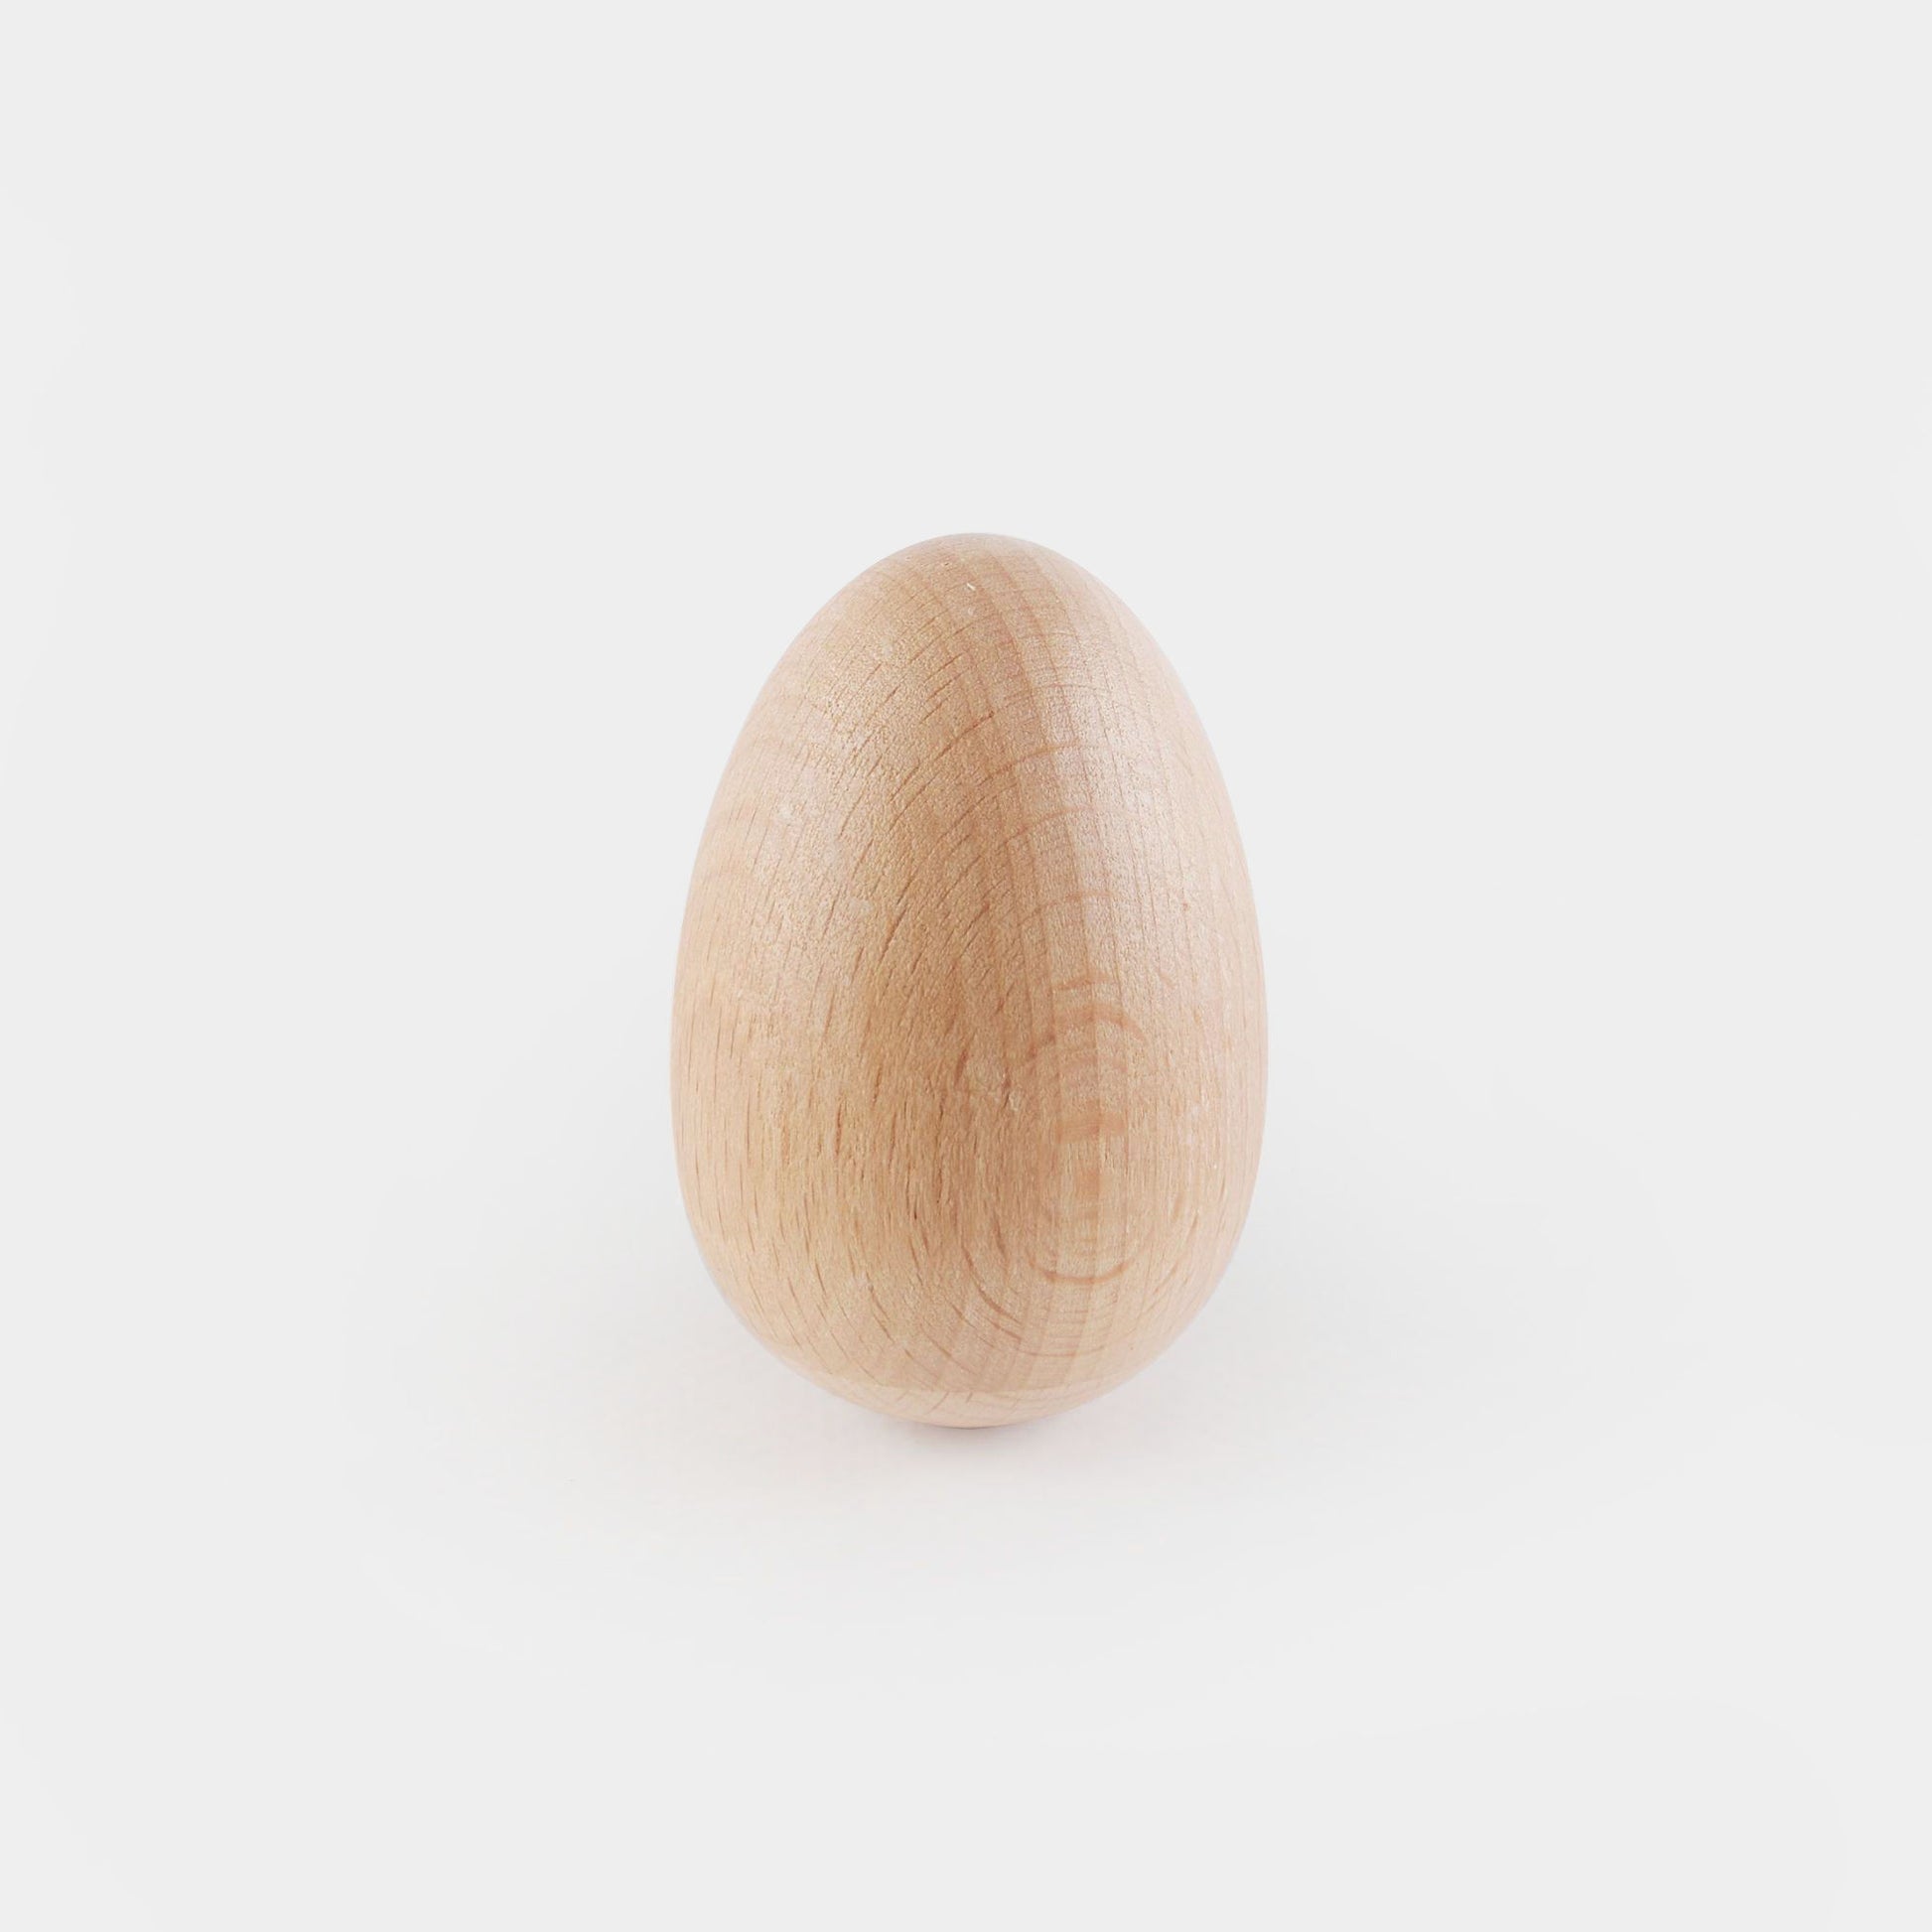 Natural　Egg　Threeworlds　Australia　Shaker　–